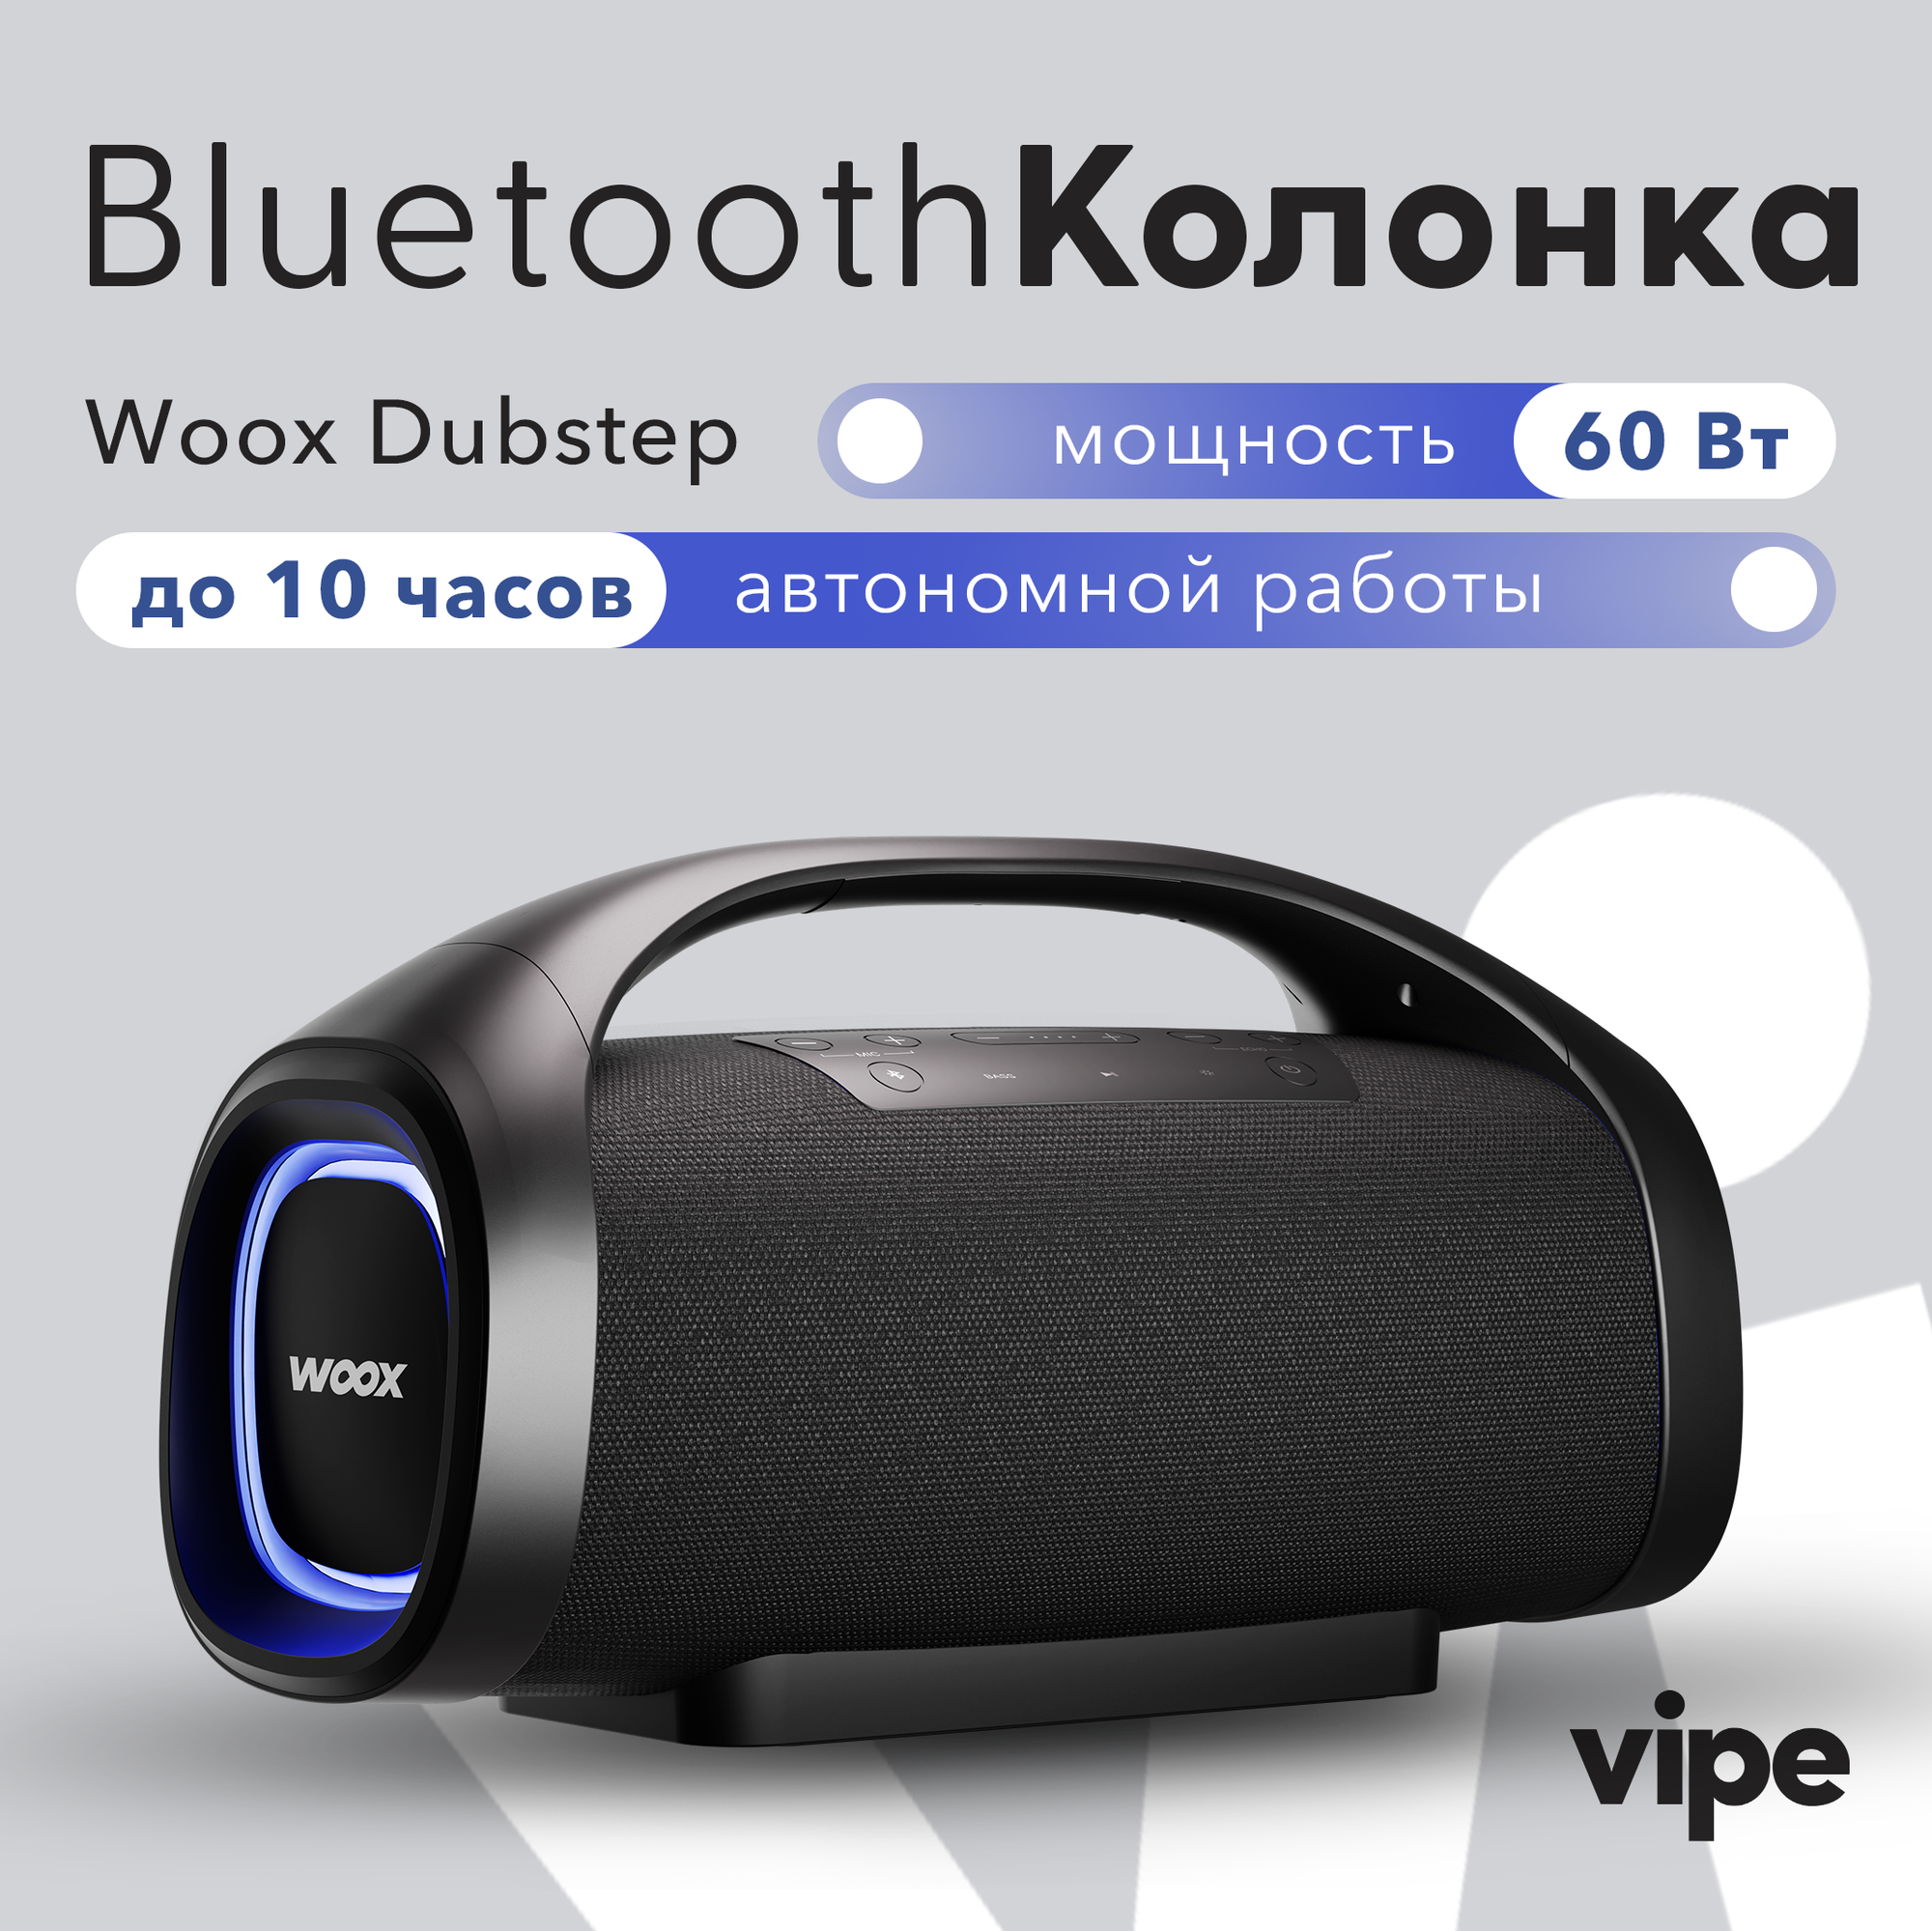 Портативная беспроводная Bluetooth колонка Vipe Woox Dubstep